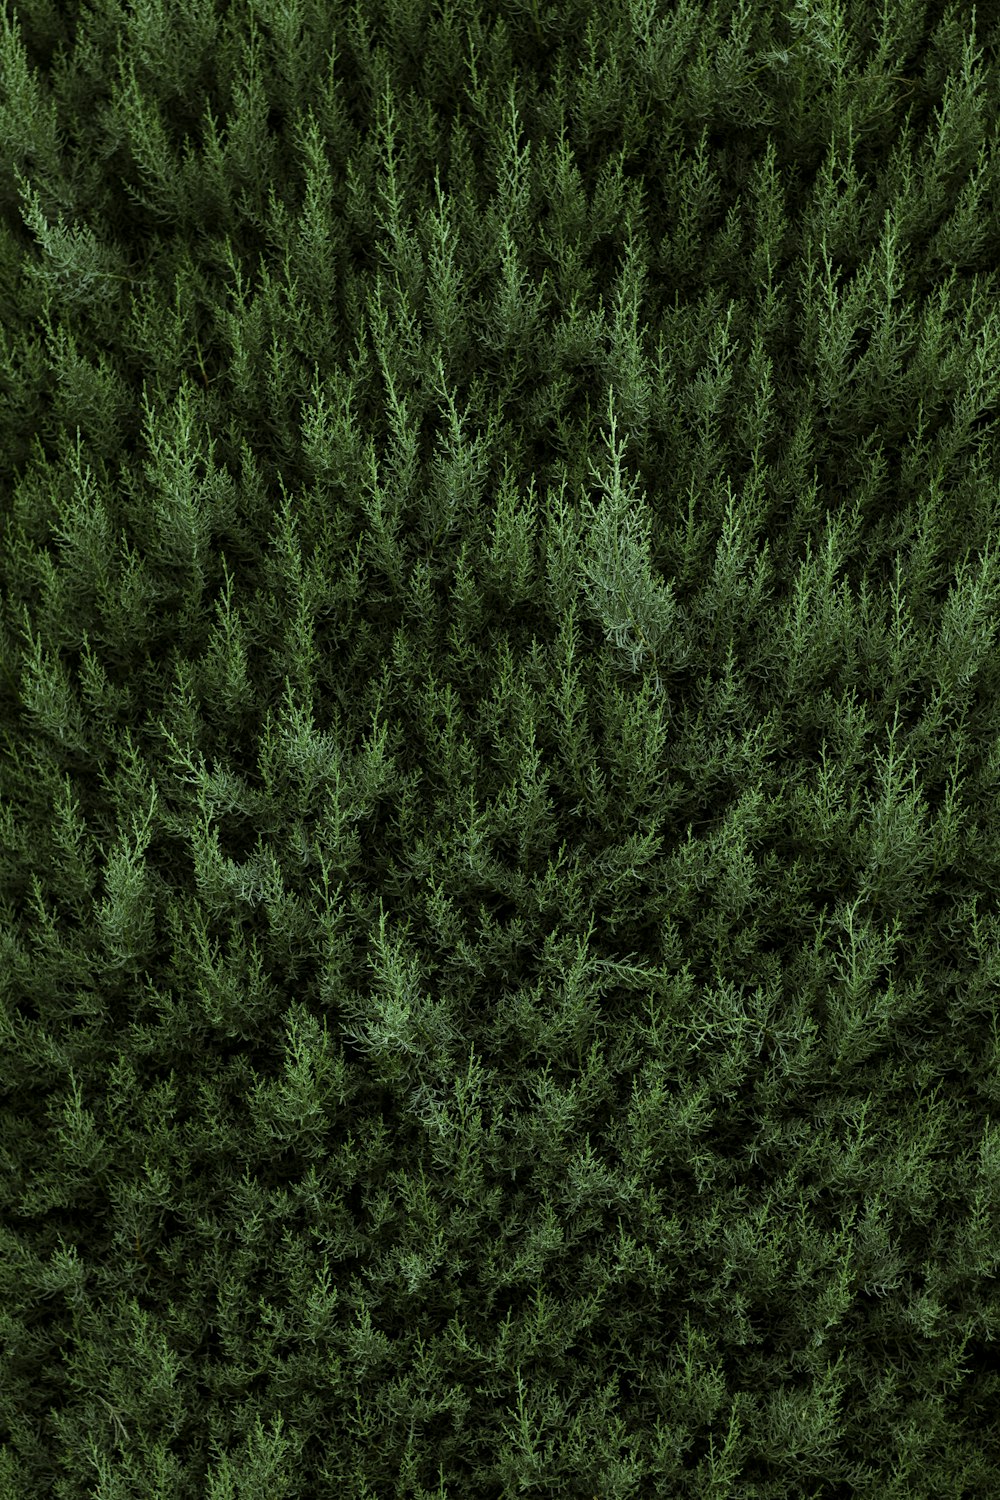 a close-up of a green grass